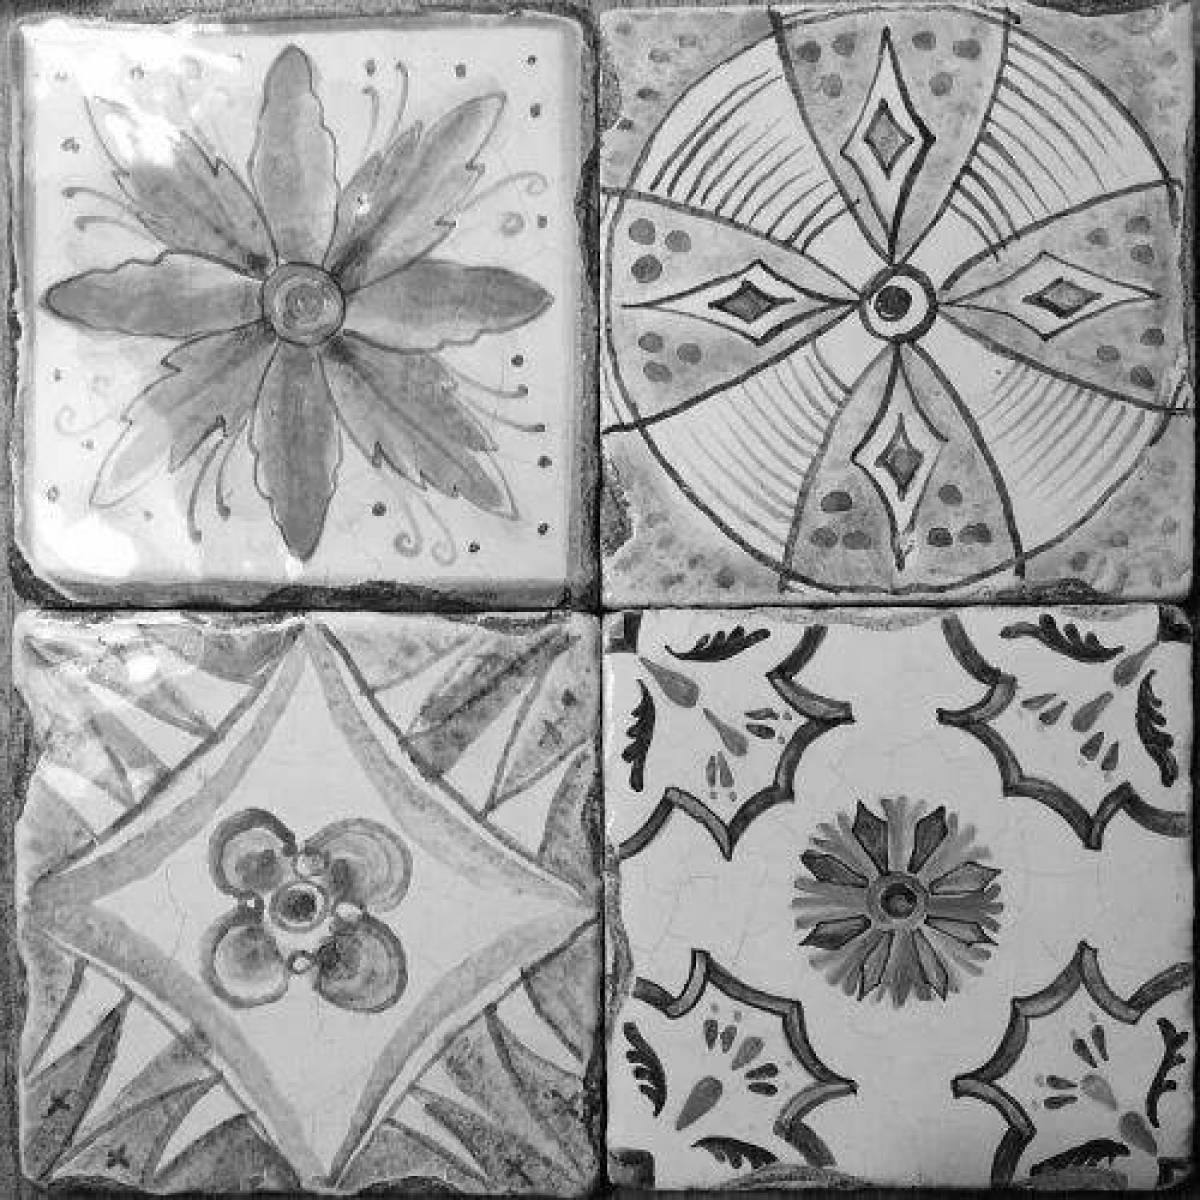 Coloring innovative ceramic tiles